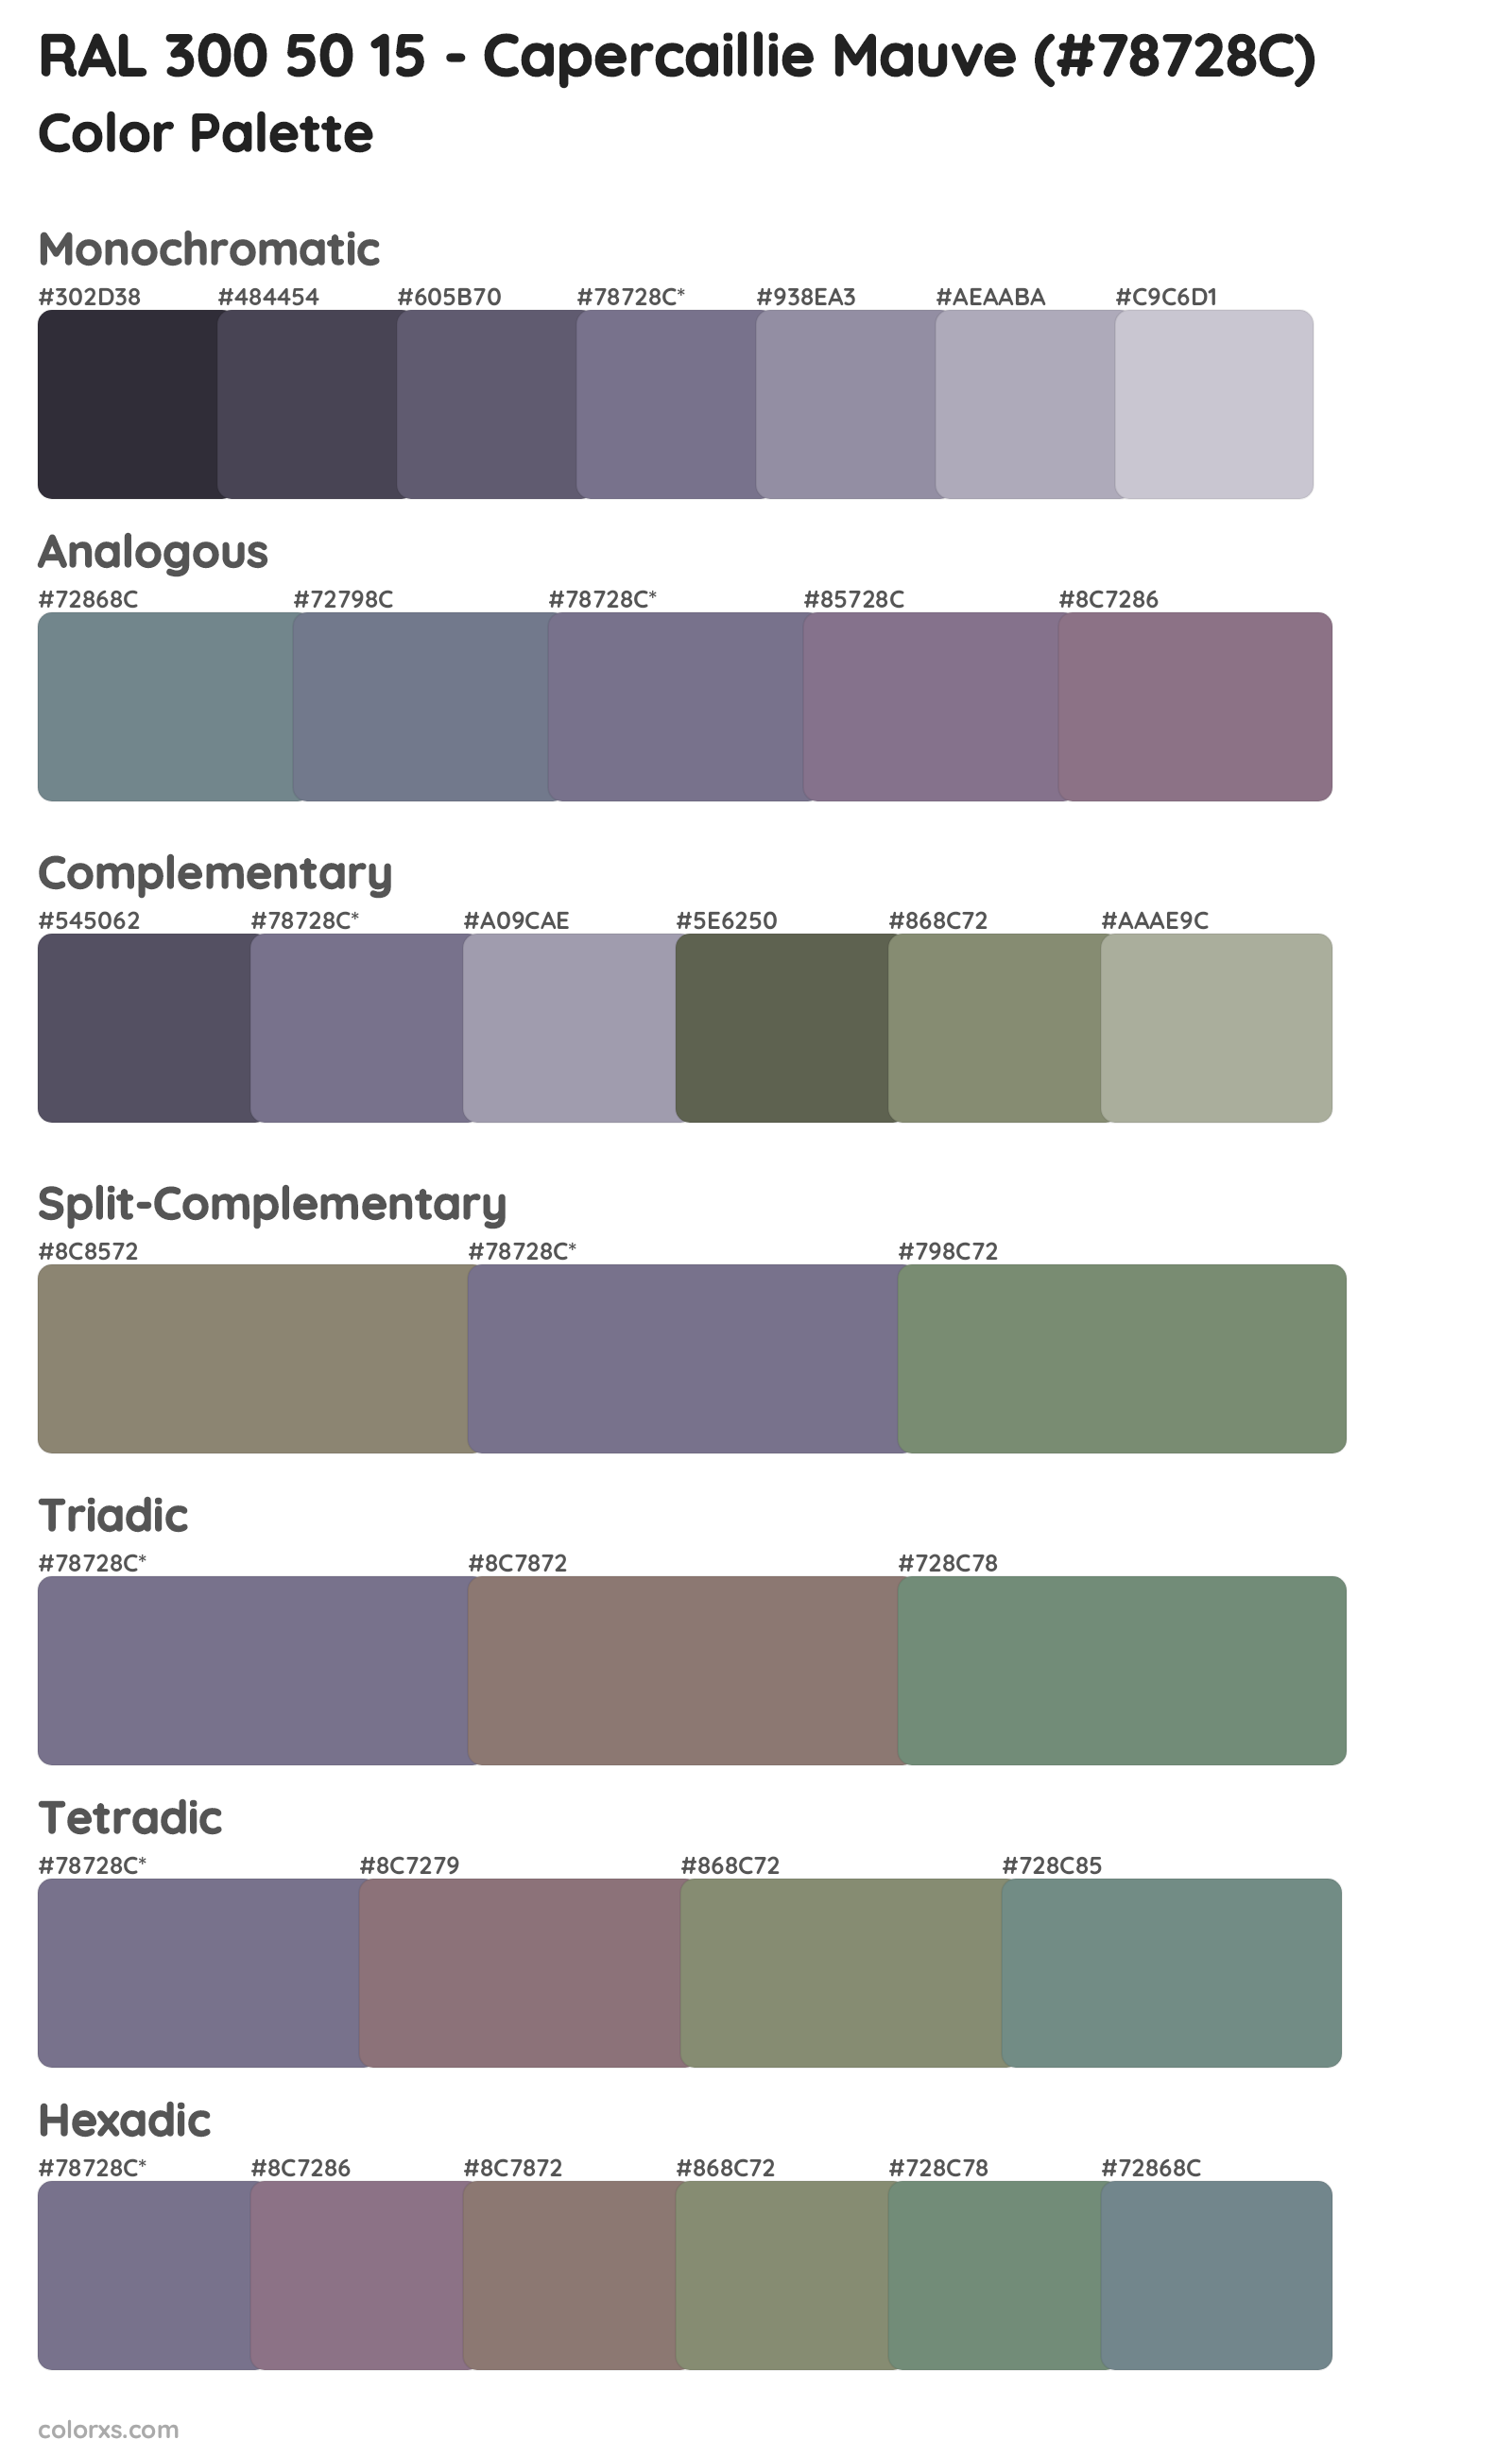 RAL 300 50 15 - Capercaillie Mauve Color Scheme Palettes